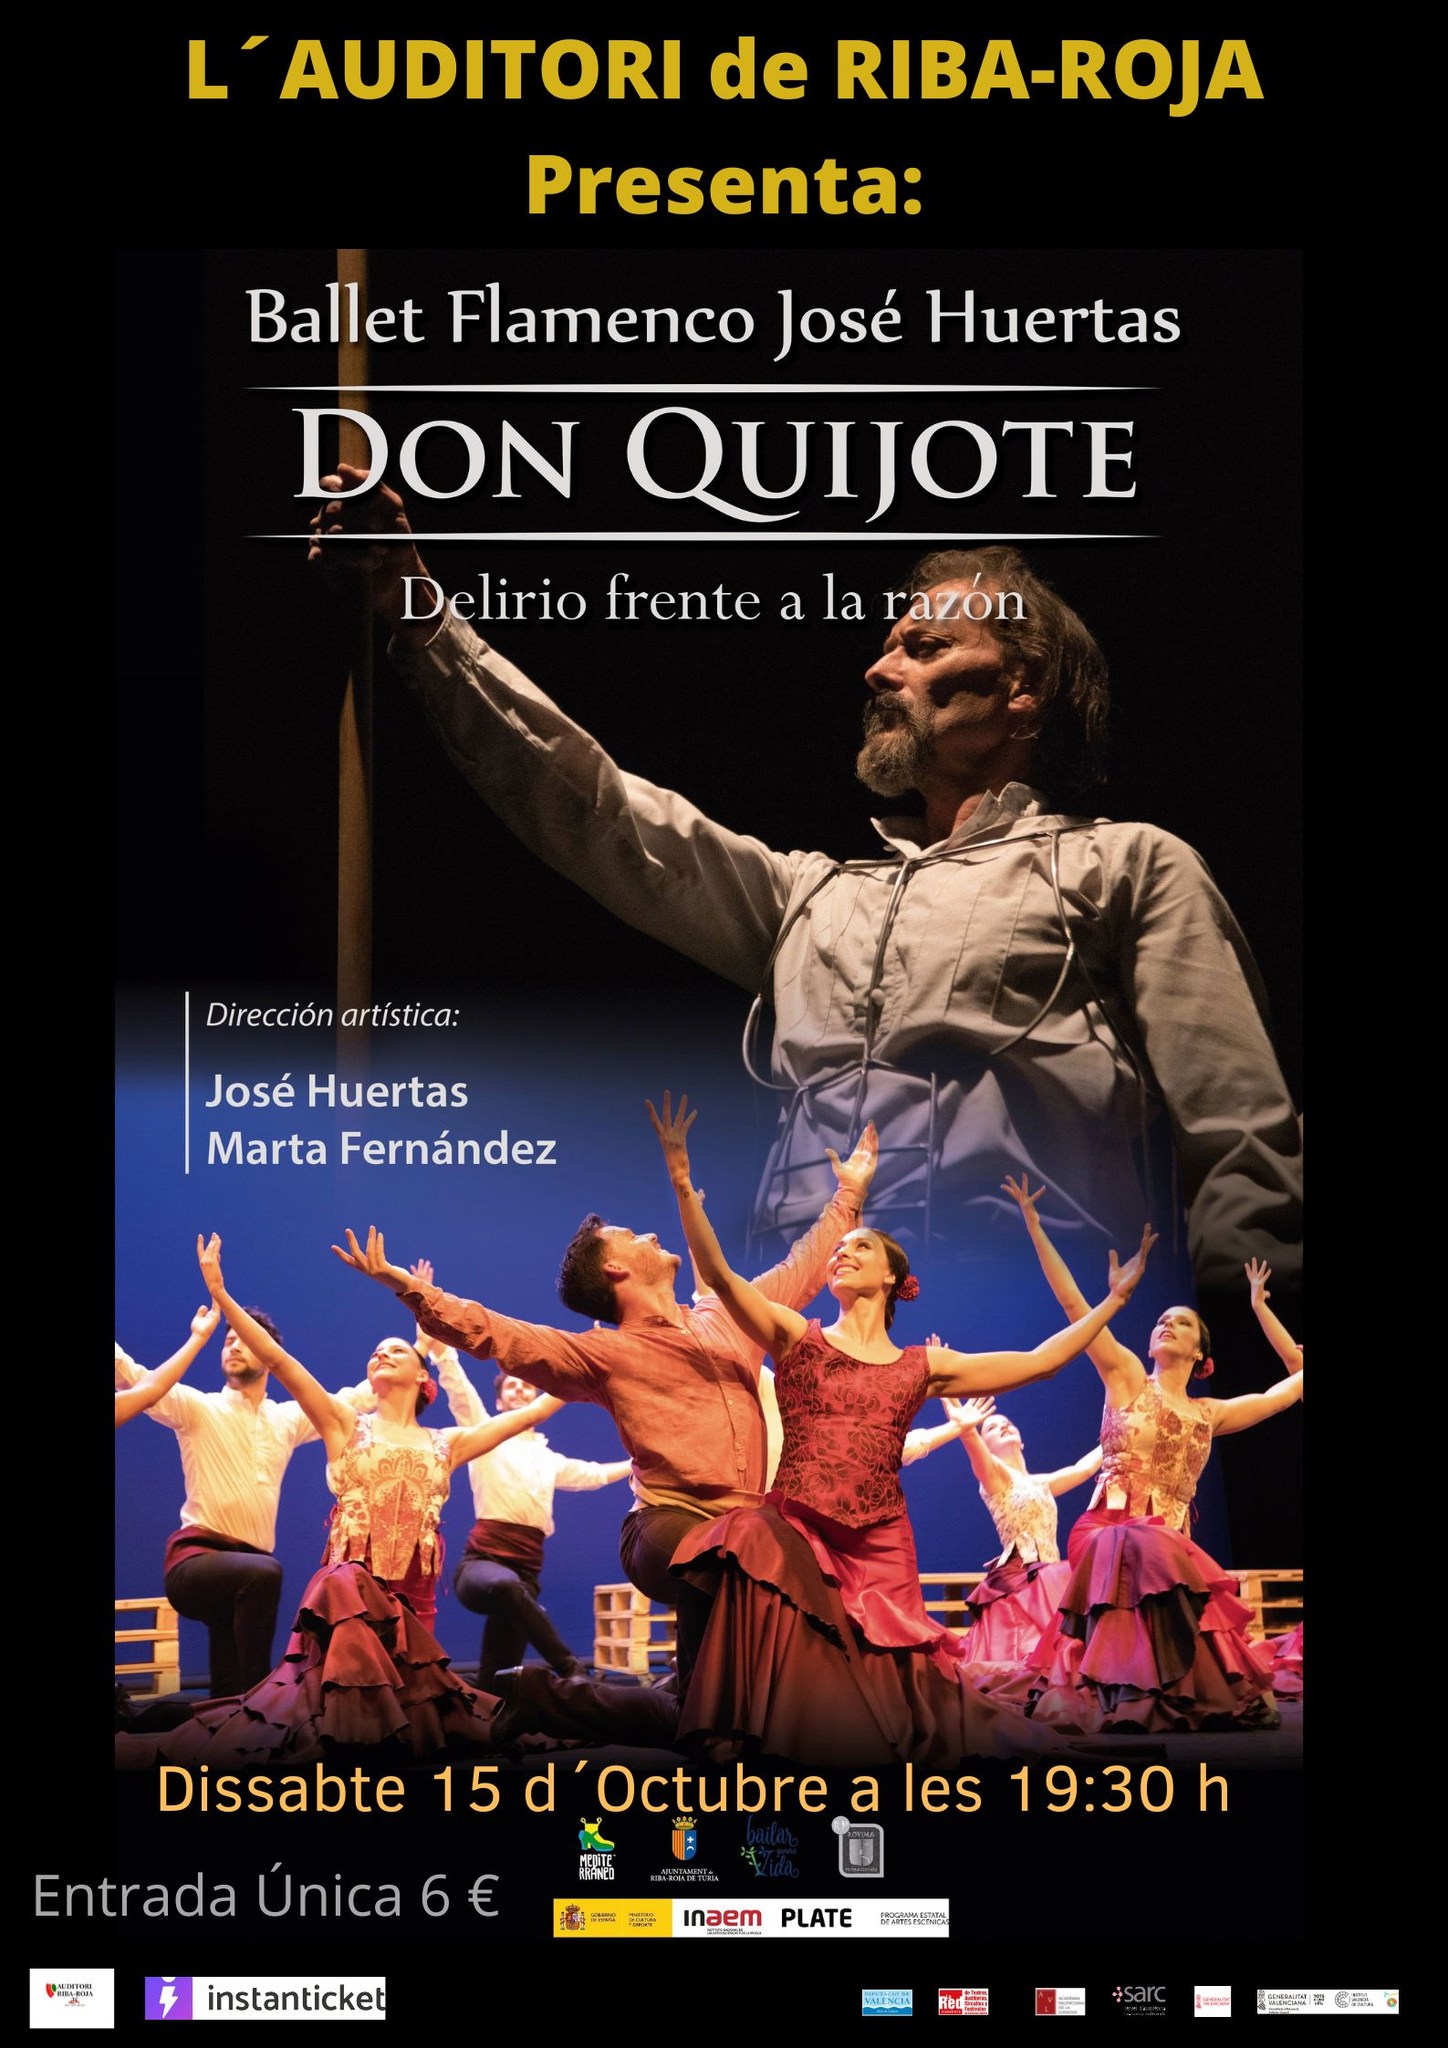 El ballet flamenco de José Huertas vuelve a actuar en Riba-roja con su espectáculo Don Quijote